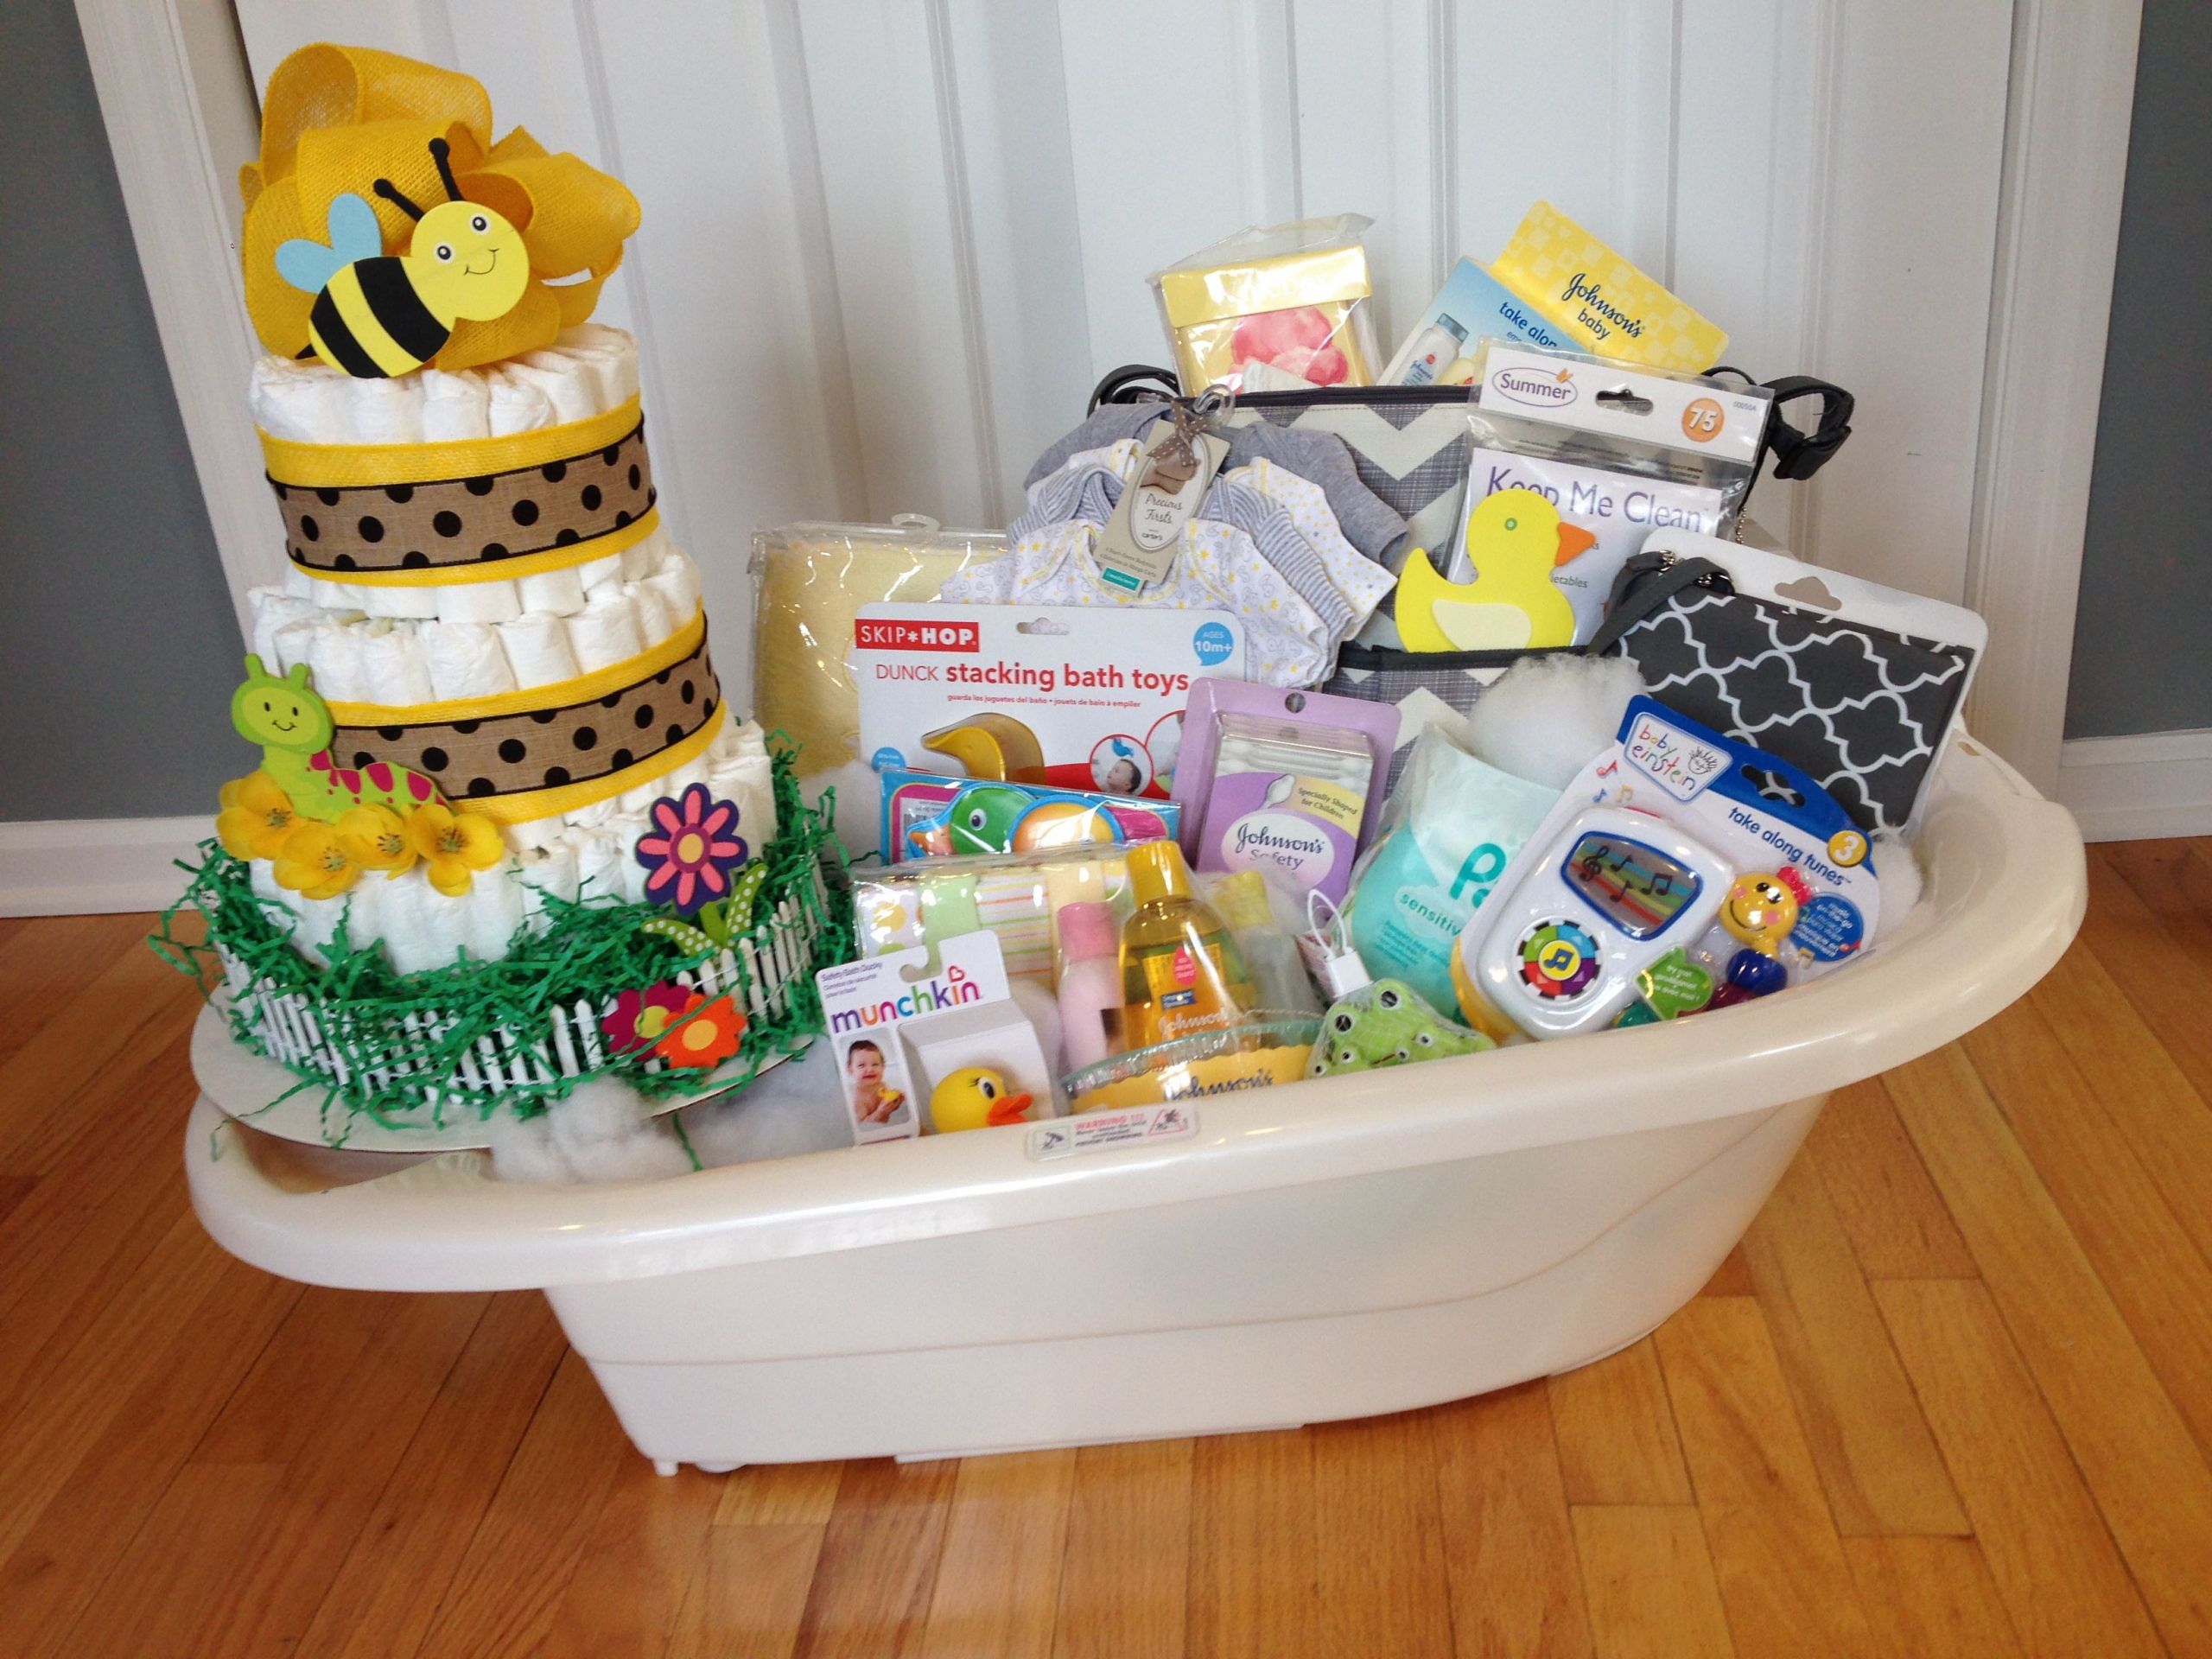 Baby Bath Tub Gift Ideas
 Baby Shower gender neutral bath tub basket and diaper